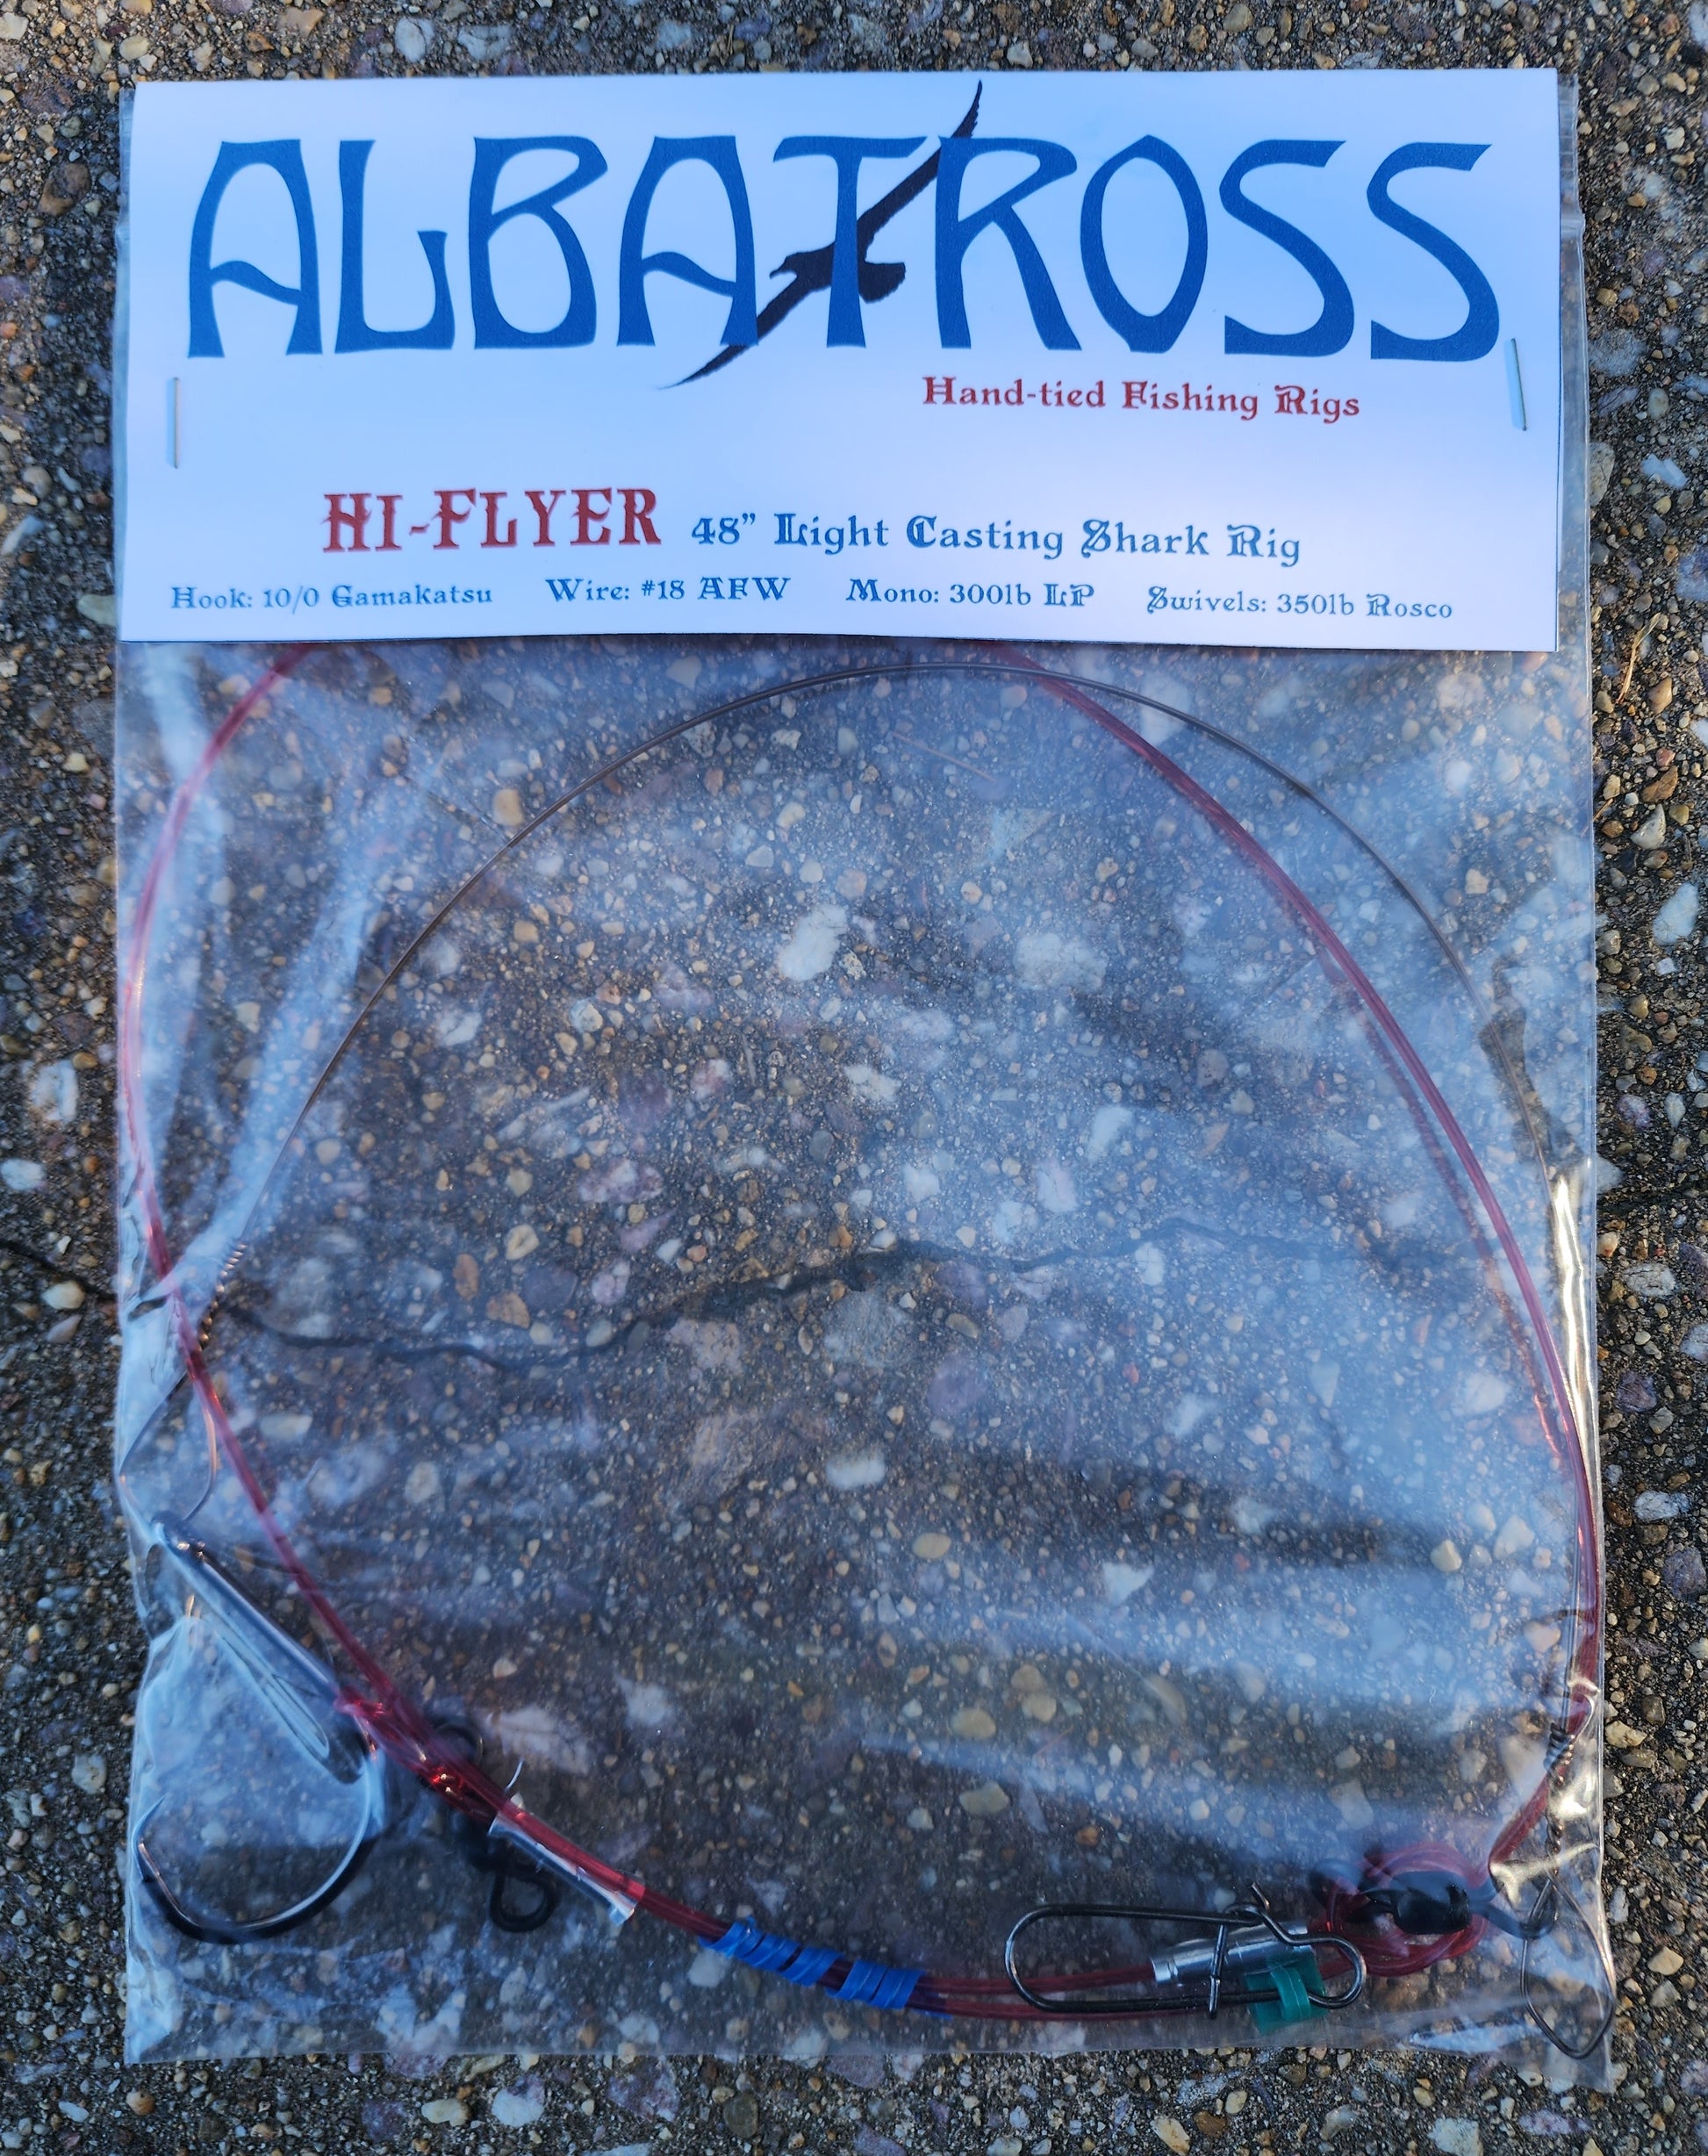 Hi-Flyer: Light Casting Shark Rig – Albatross Hand-tied Fishing Rigs